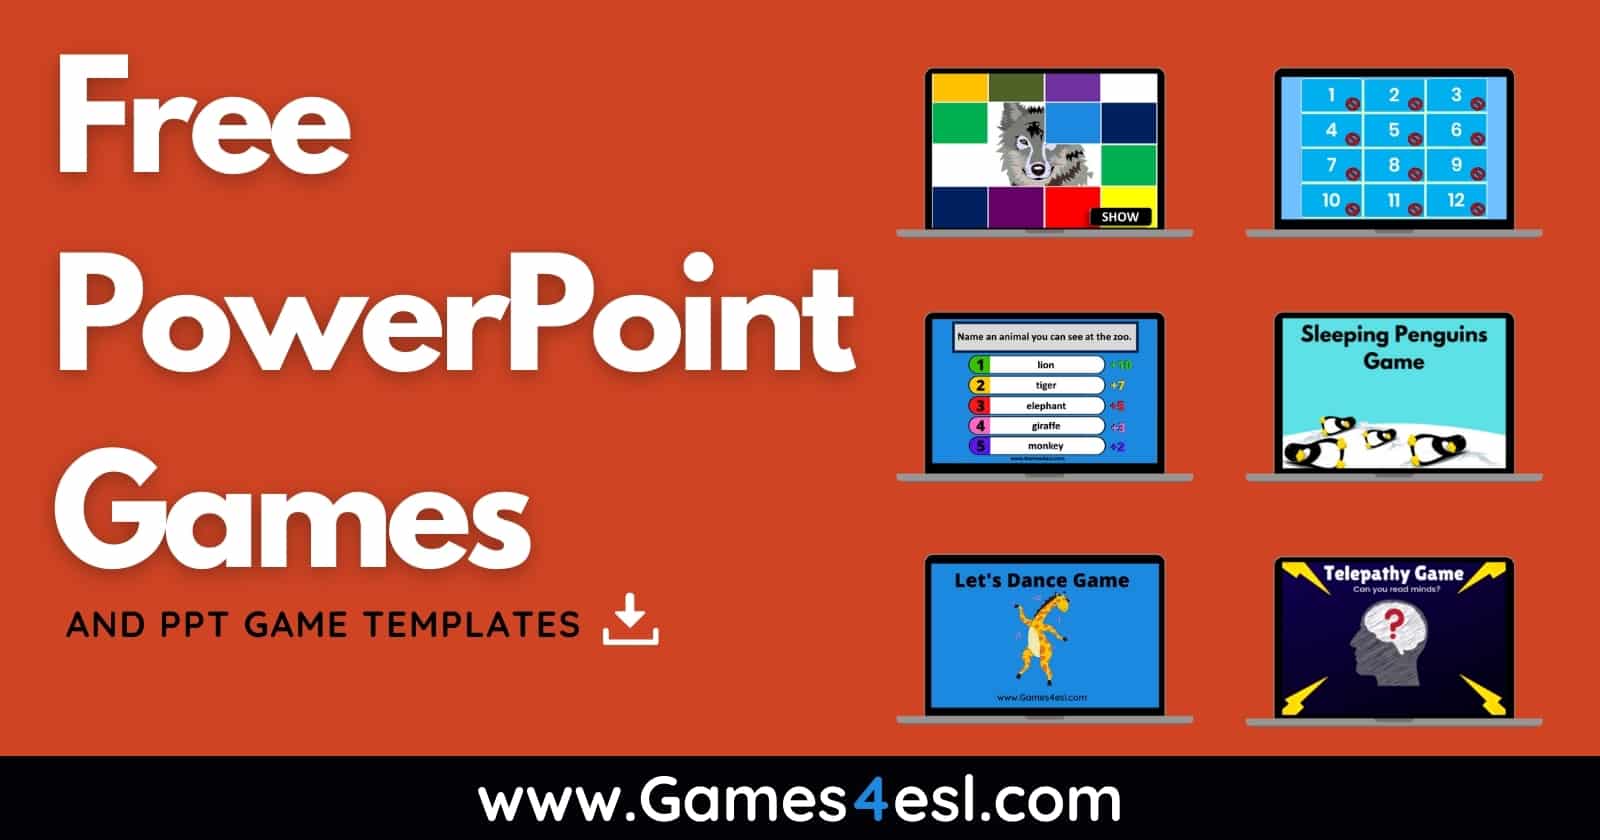 ESL PowerPoint Games sẽ là người bạn đồng hành đắc lực cho các giáo viên tiếng Anh. Với sự kết hợp giữa trò chơi và hệ thống học tập, ESL PowerPoint Games sẽ giúp mọi học viên có thể học tiếng Anh một cách vui nhộn và hiệu quả. Hãy tham gia kho trò chơi đa dạng và hấp dẫn của ESL PowerPoint Games để trải nghiệm những giờ học thú vị nhất.